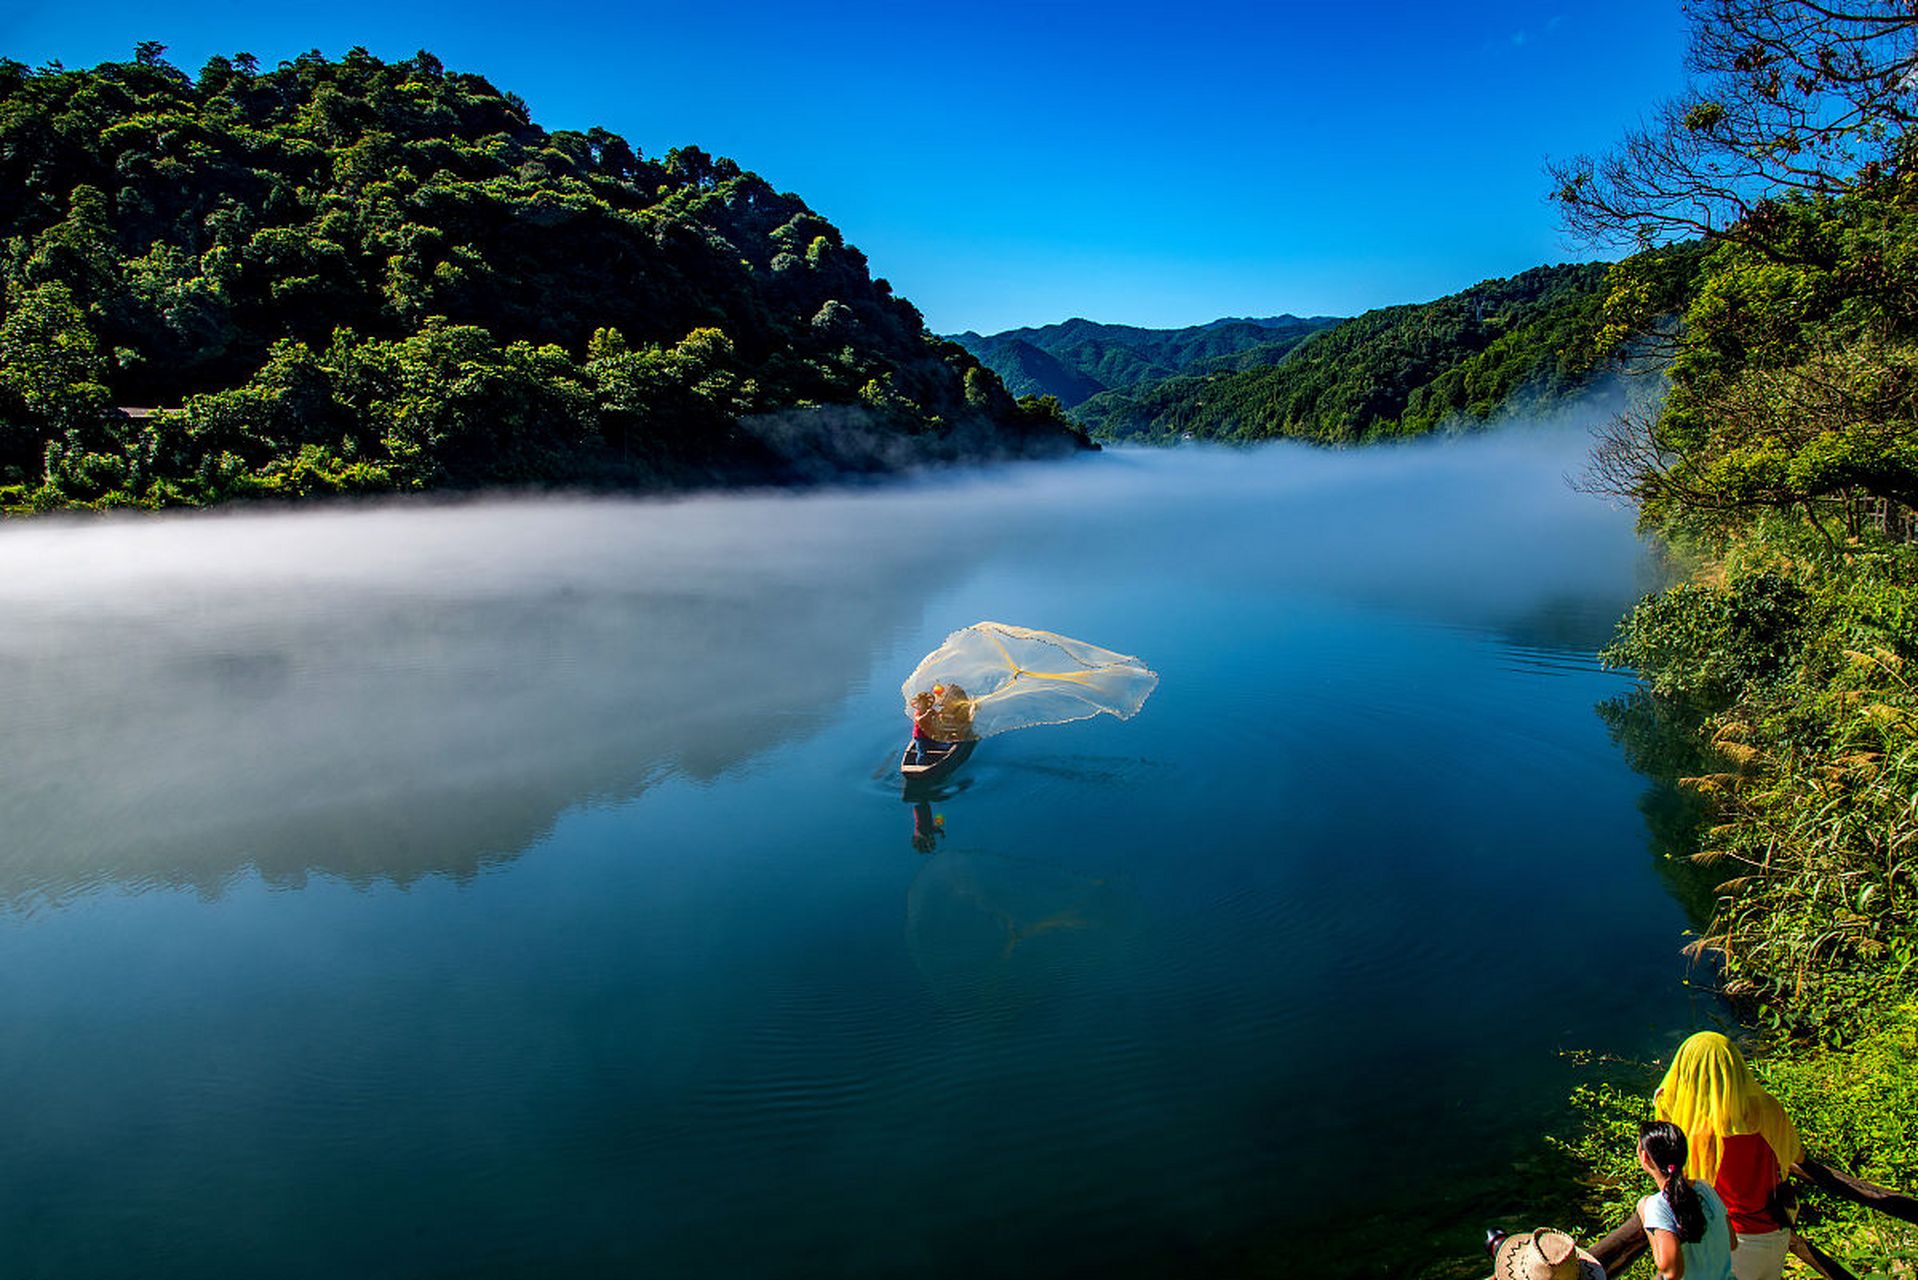 东江湖风景旅游区位于湖南省资兴市境内,是国家级风景名胜区,国家5a级